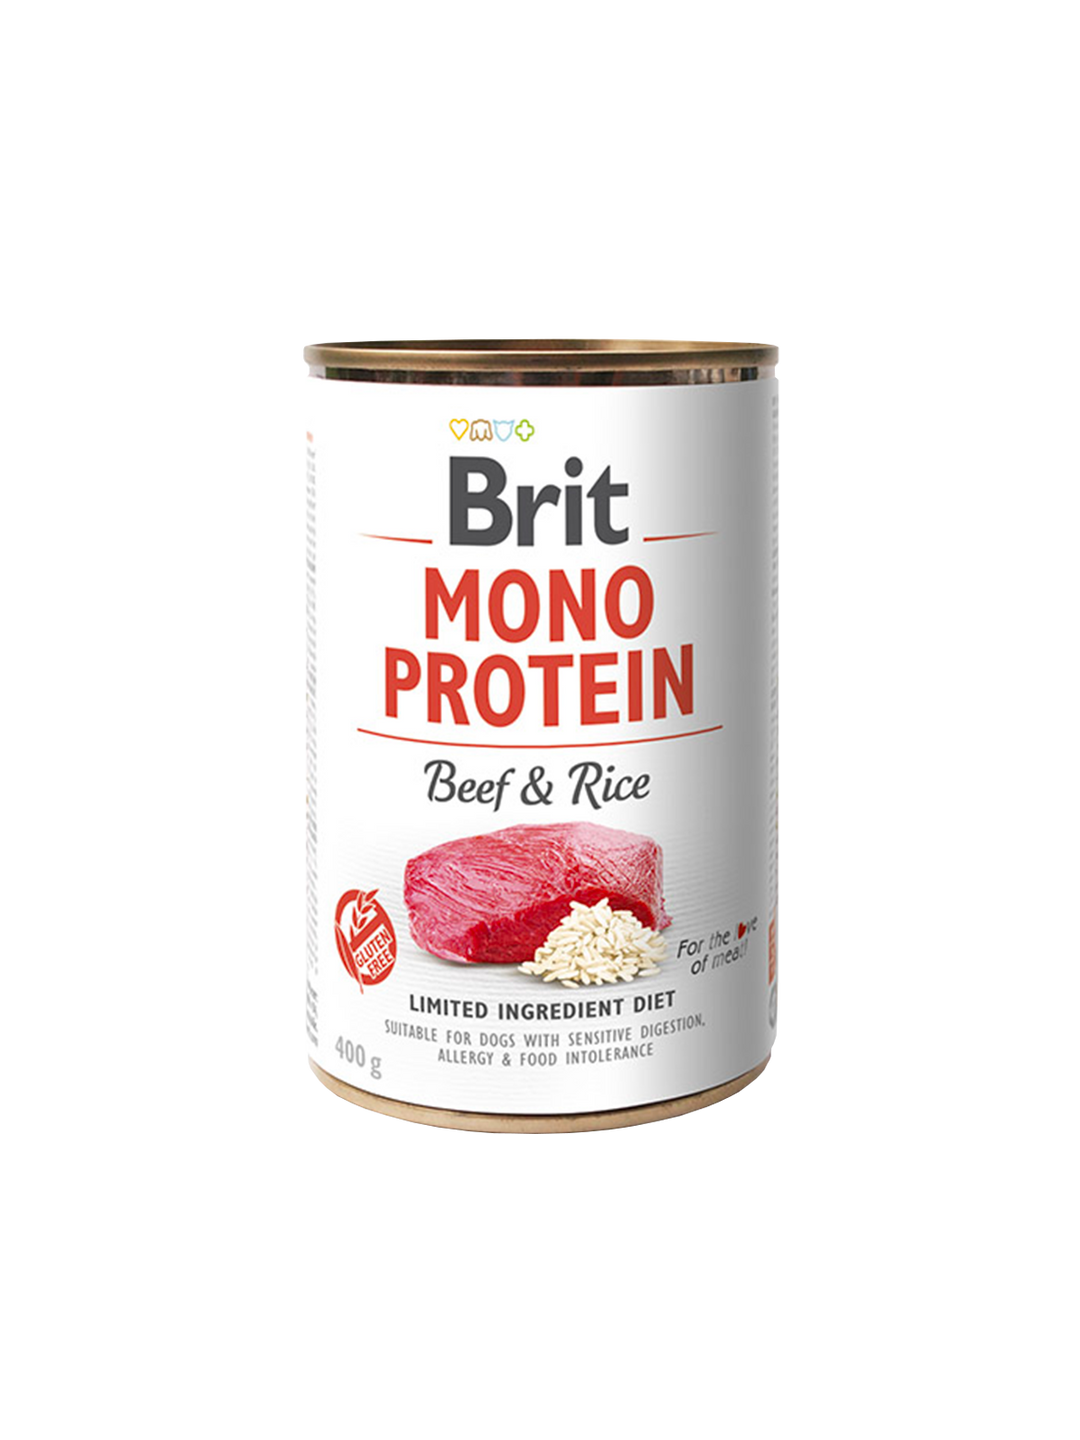 Brit Mono Protein tins 400g - Beef & Rice